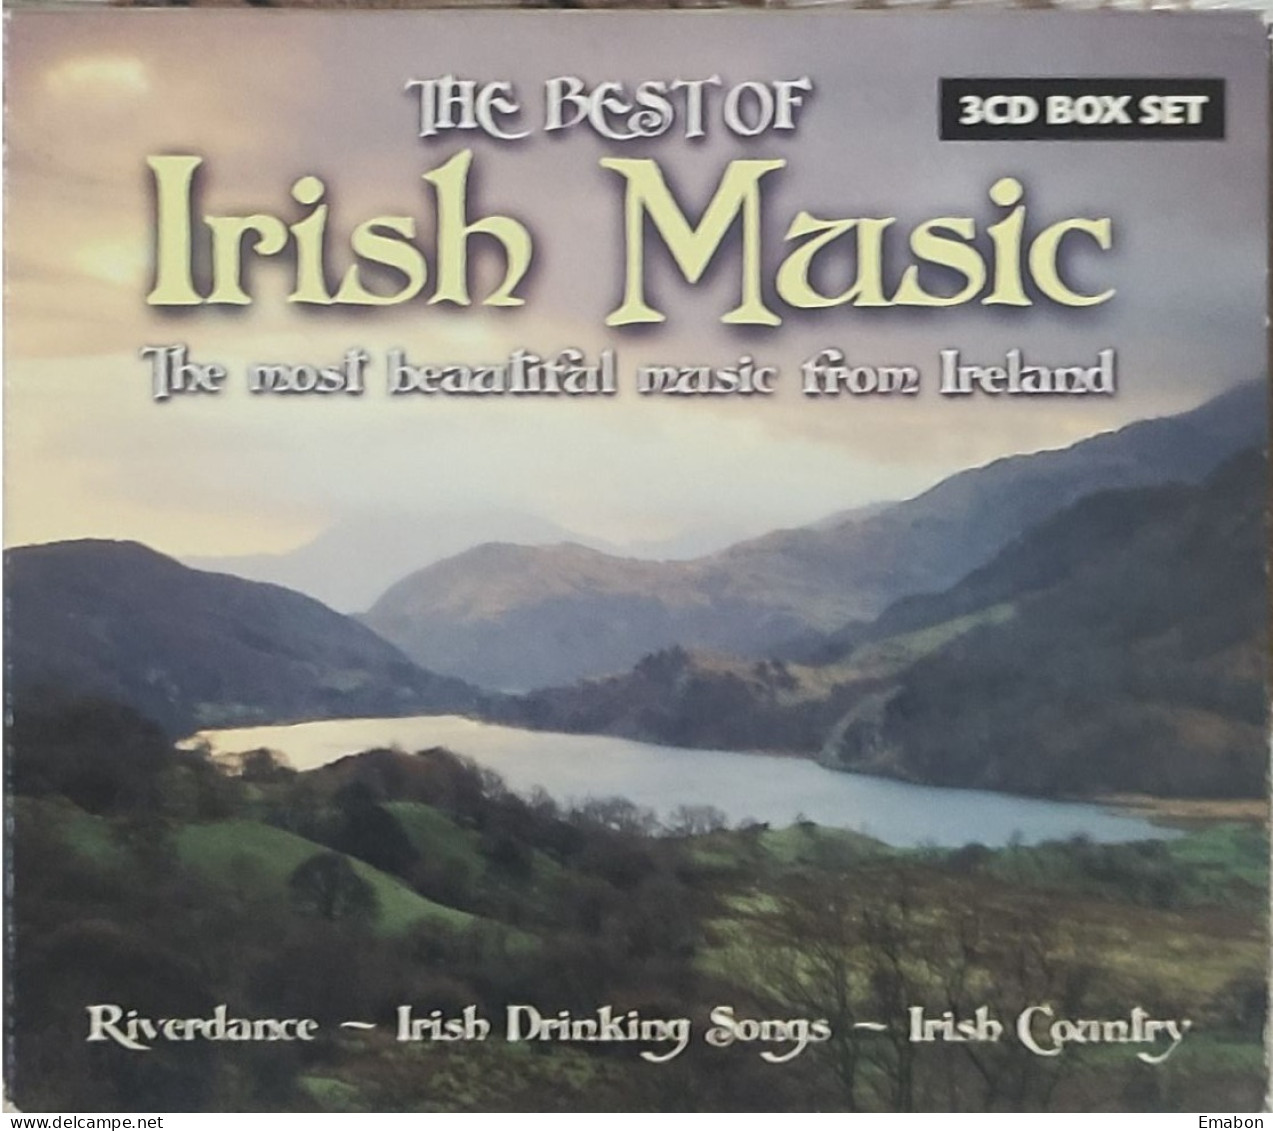 BORGATTA - 3cd -BEST OF IRISH MUSIC - RIVERDANCE, IRISH DRINKING SONGS, IRISH COUNTRY -  USATO In Buono Stato - Other - English Music